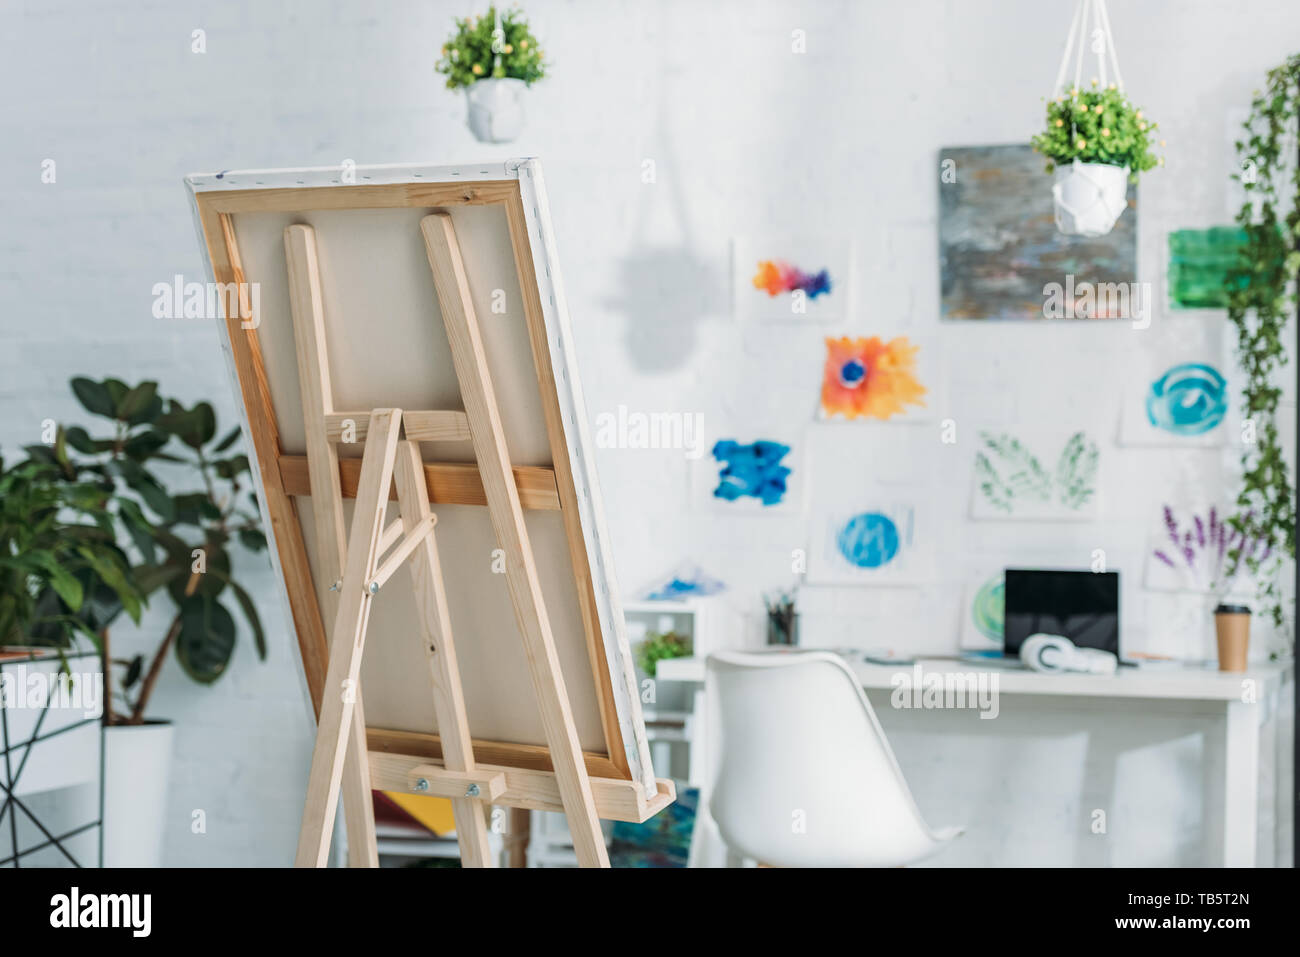 Habitación espaciosa con caballete, pinturas de pared y plantas en macetas  Fotografía de stock - Alamy